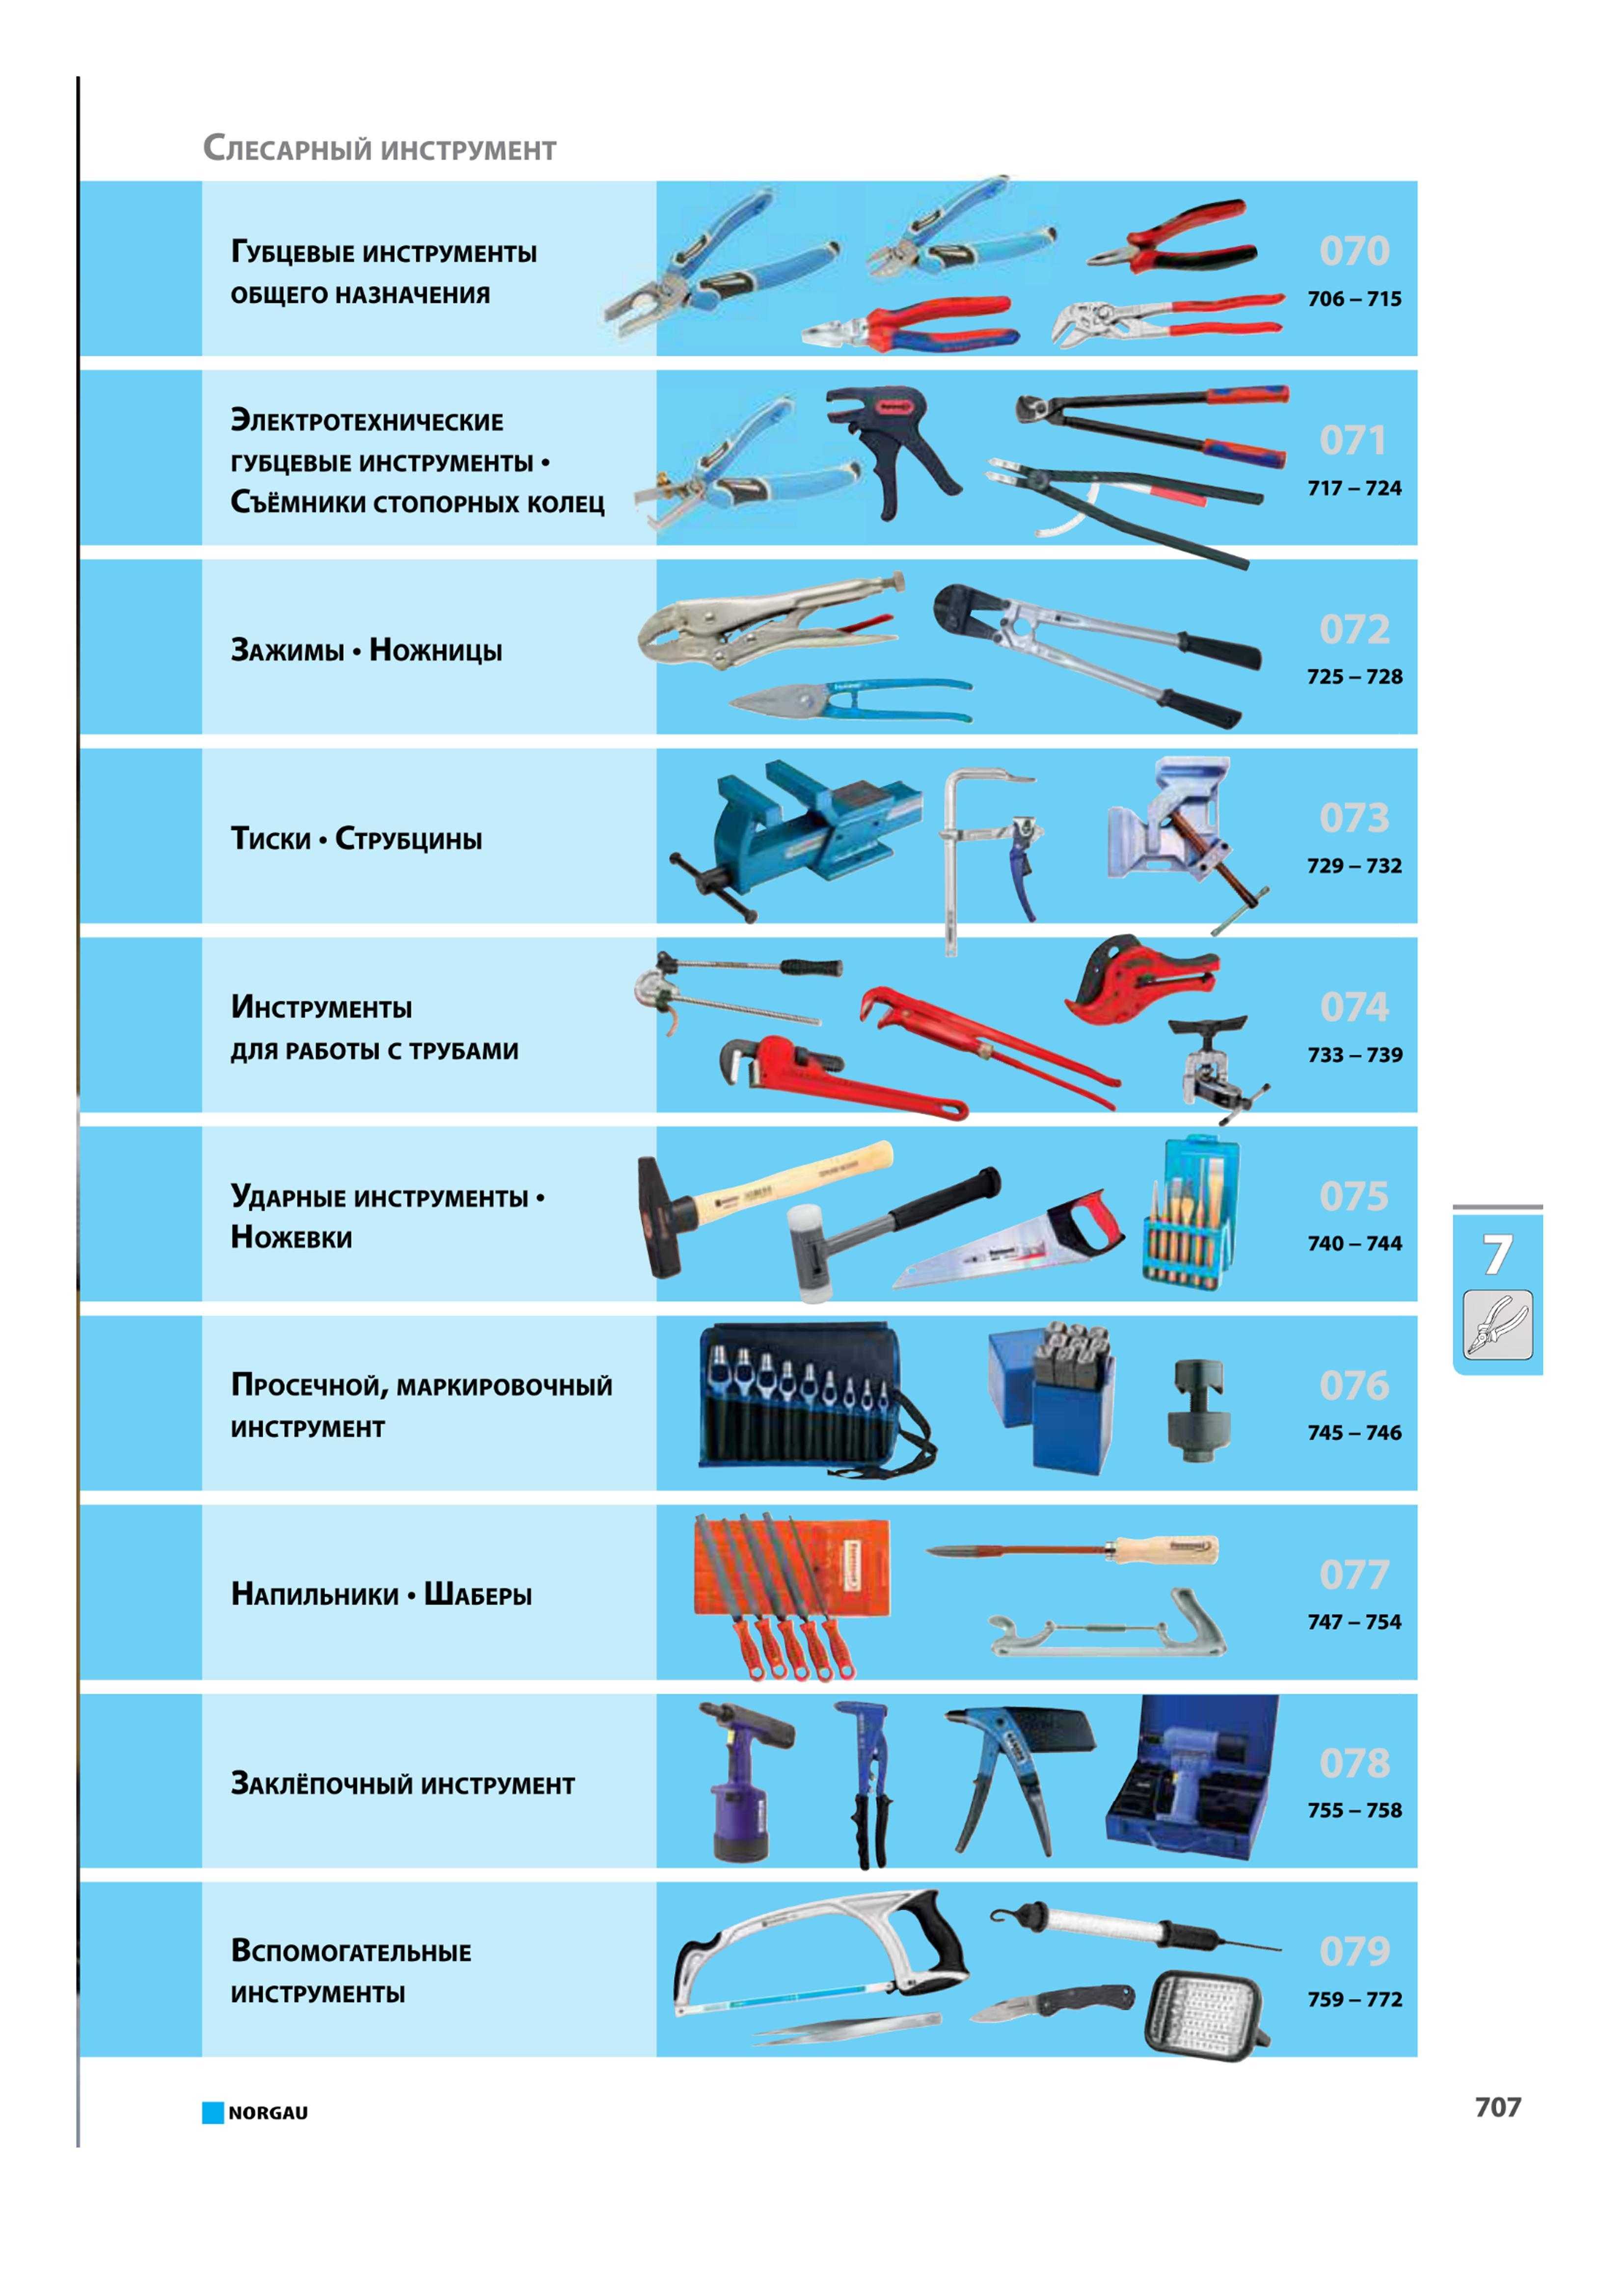 Tools list. Таблица инструменты слесаря сборщика. Названия слесарных инструментов. Слесарный инструмент список. Слесарные ручные инструменты названия.